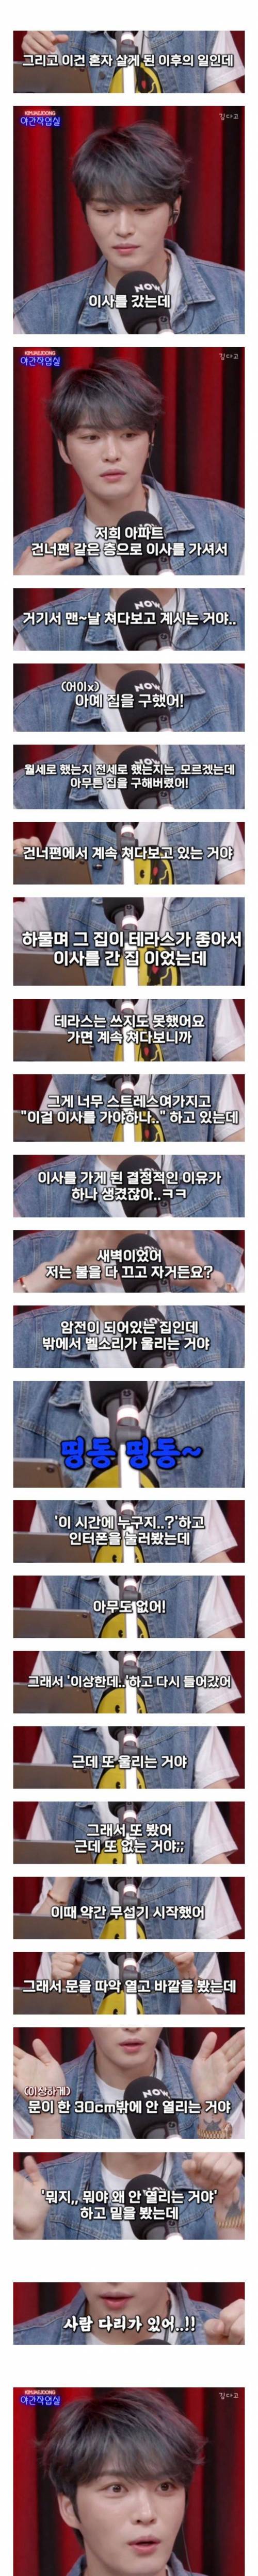 [스압] 전 동방신기 멤버의 스토커 썰 ㄷㄷ.jpg